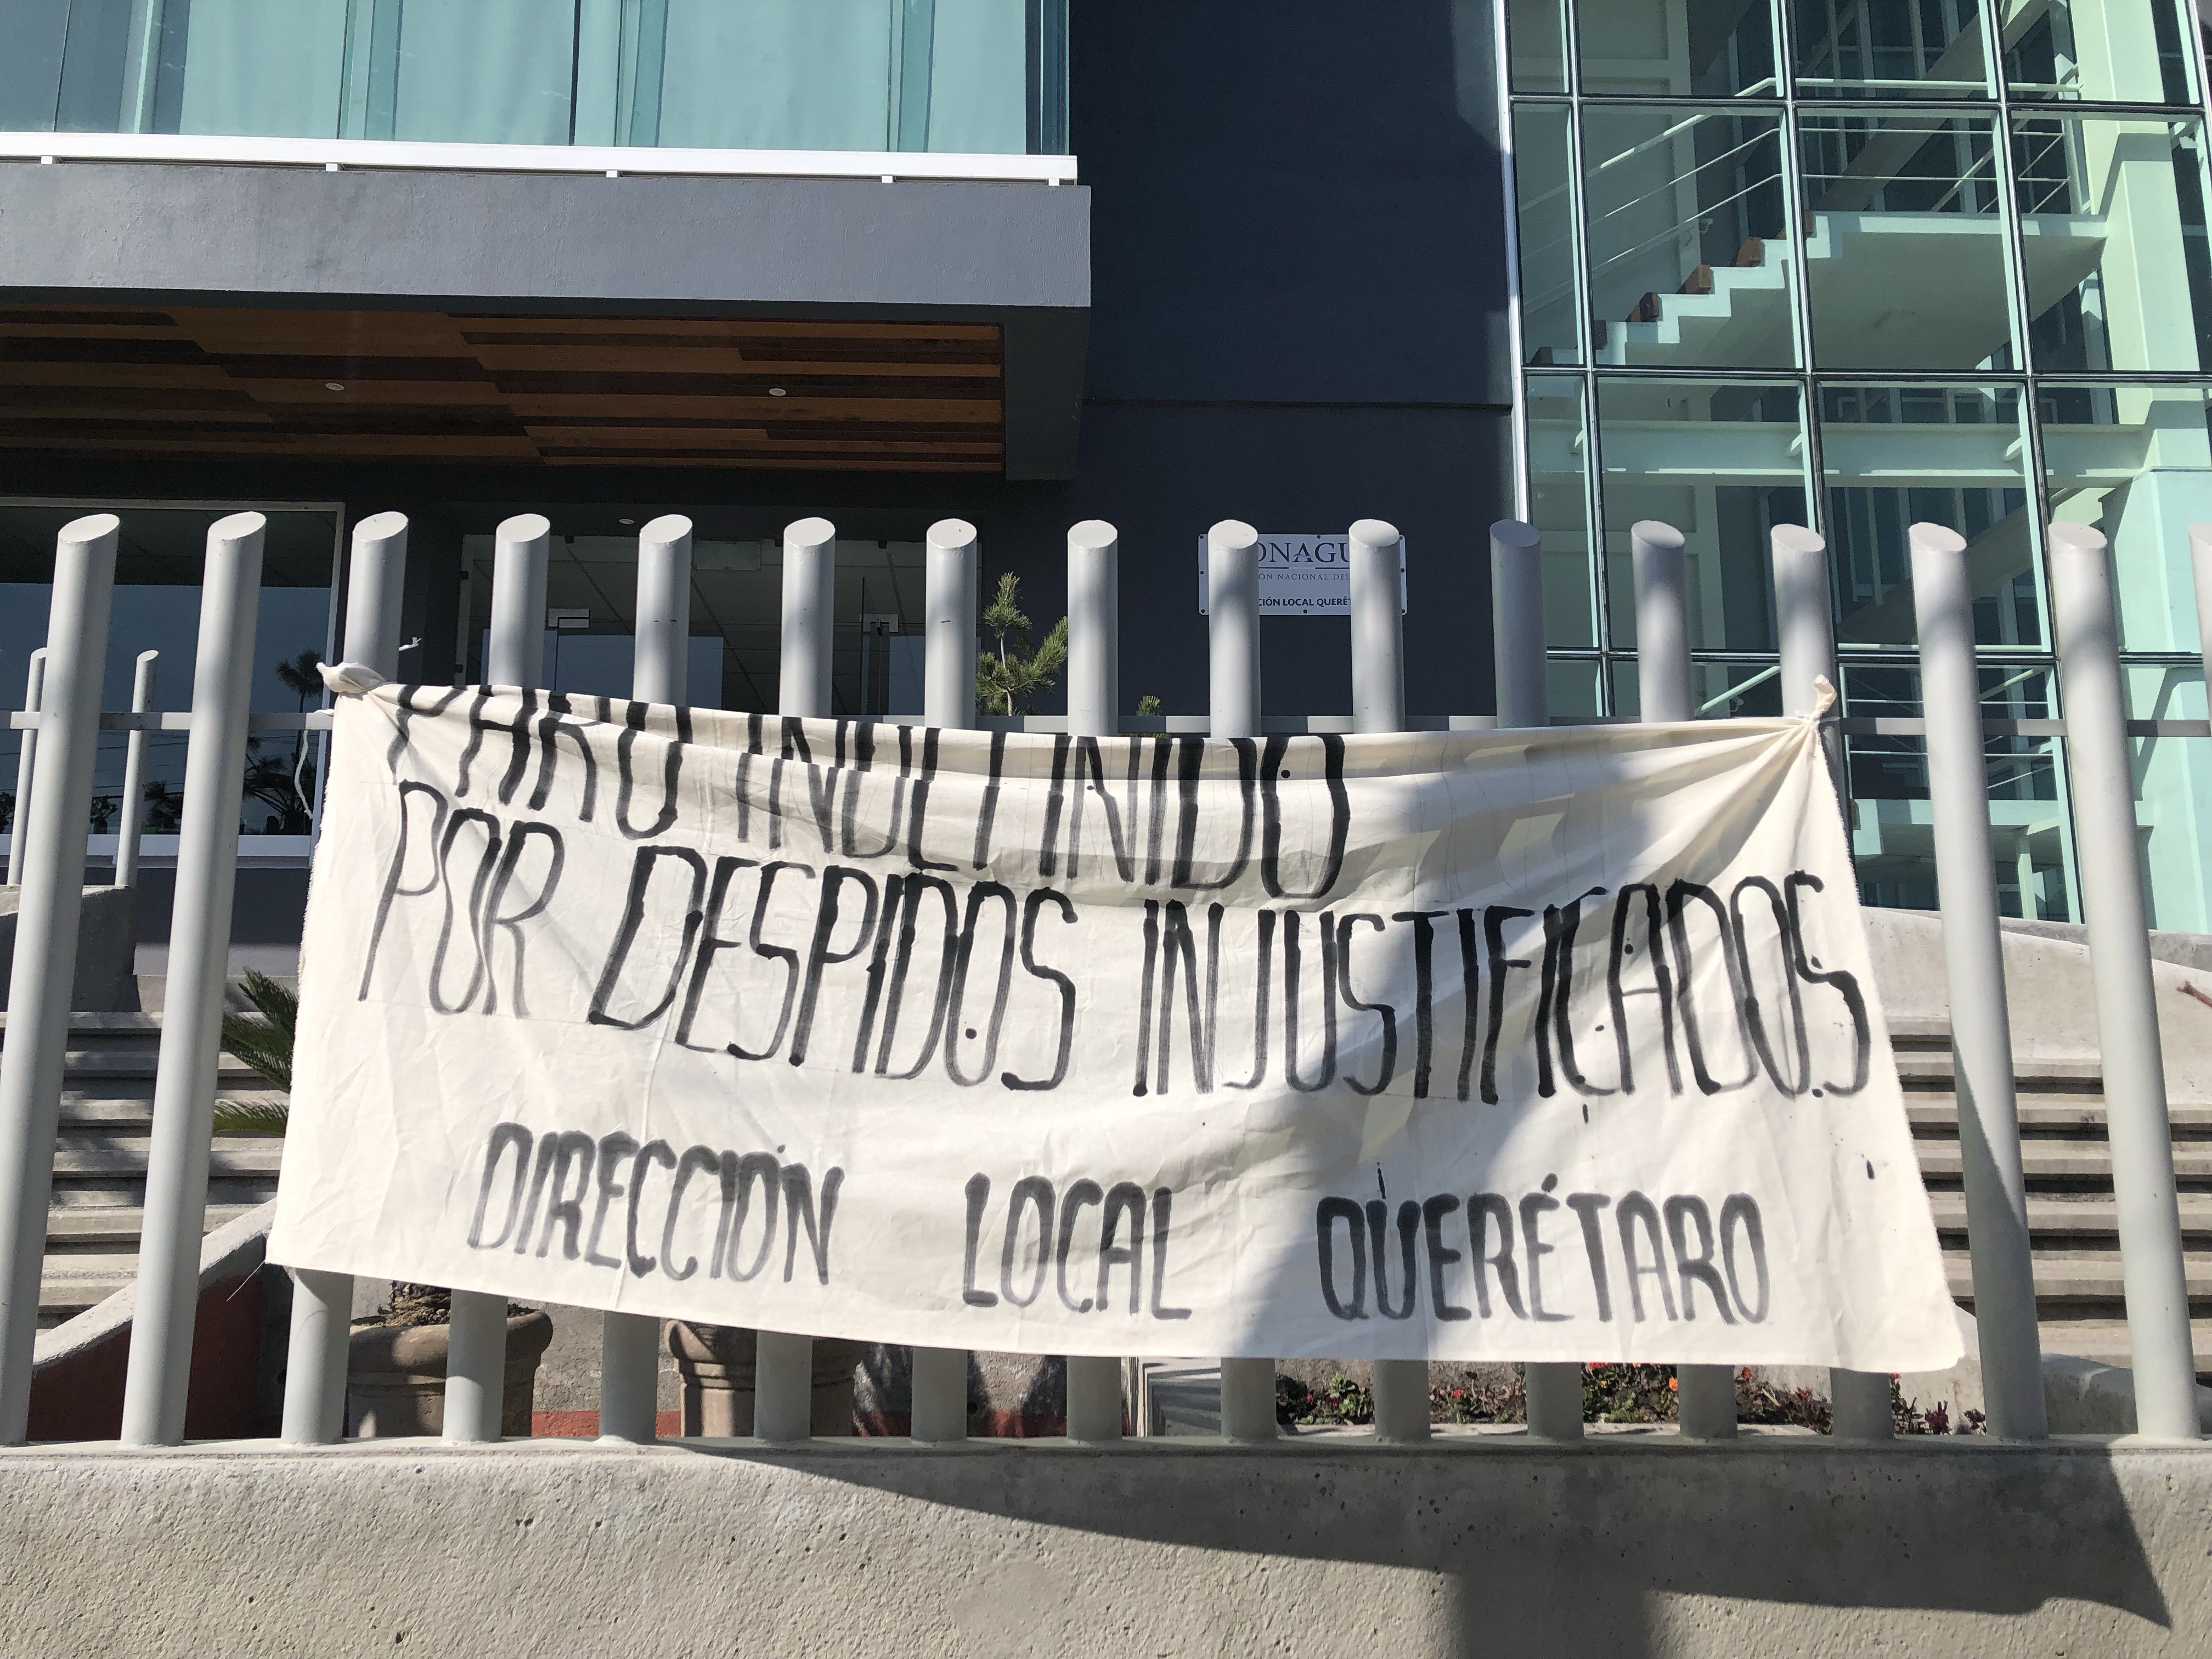  Extrabajadores de Conagua Querétaro se manifiestan por presunto despido injustificado